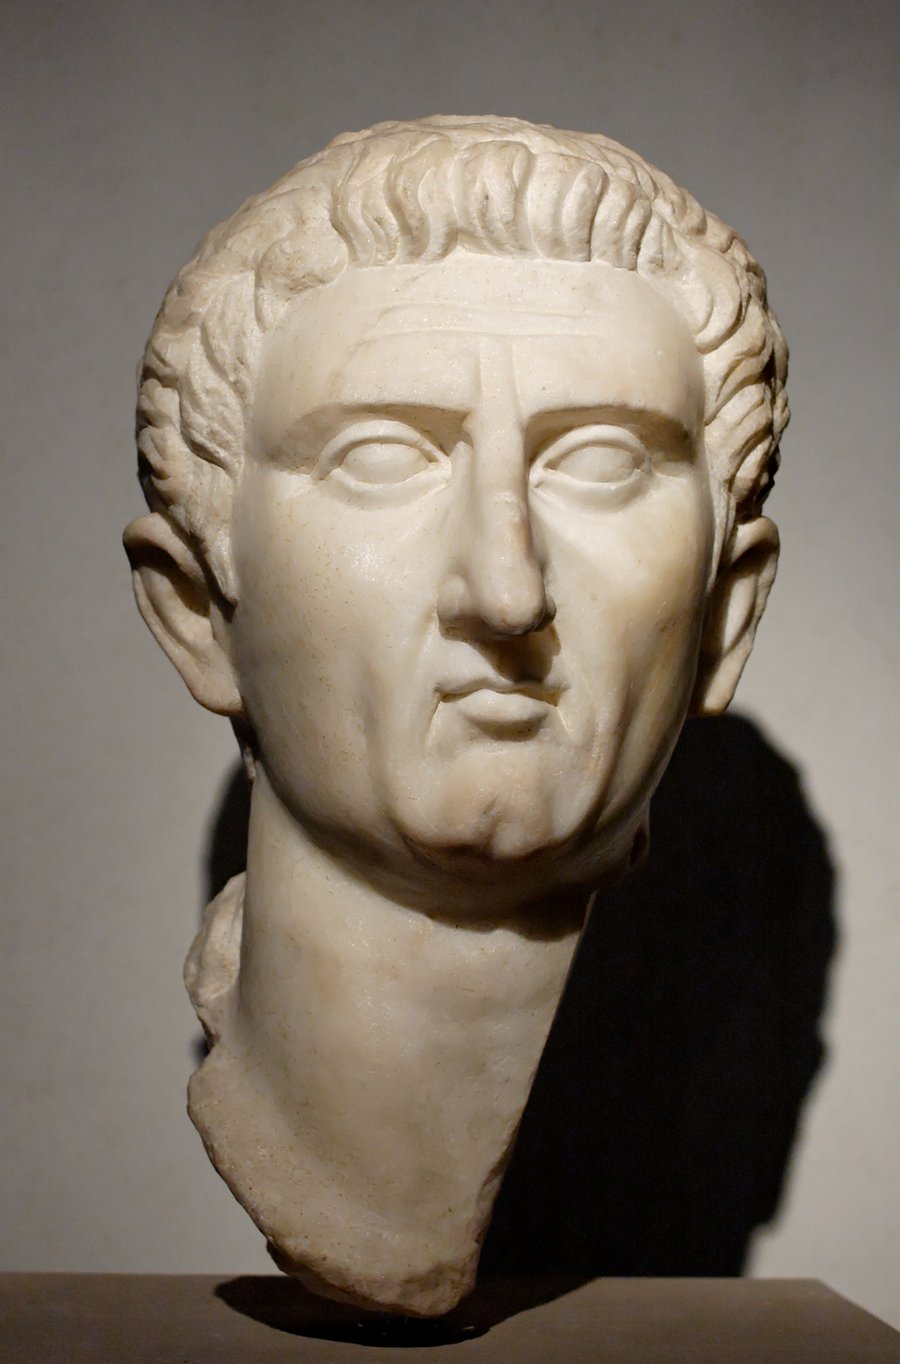 הקיסר הרומאי מַרְקוּס קוֹקֶיוּס נֶרְוָוה שפגש בחז"ל ונענה לבקשתם להקל את המיסים